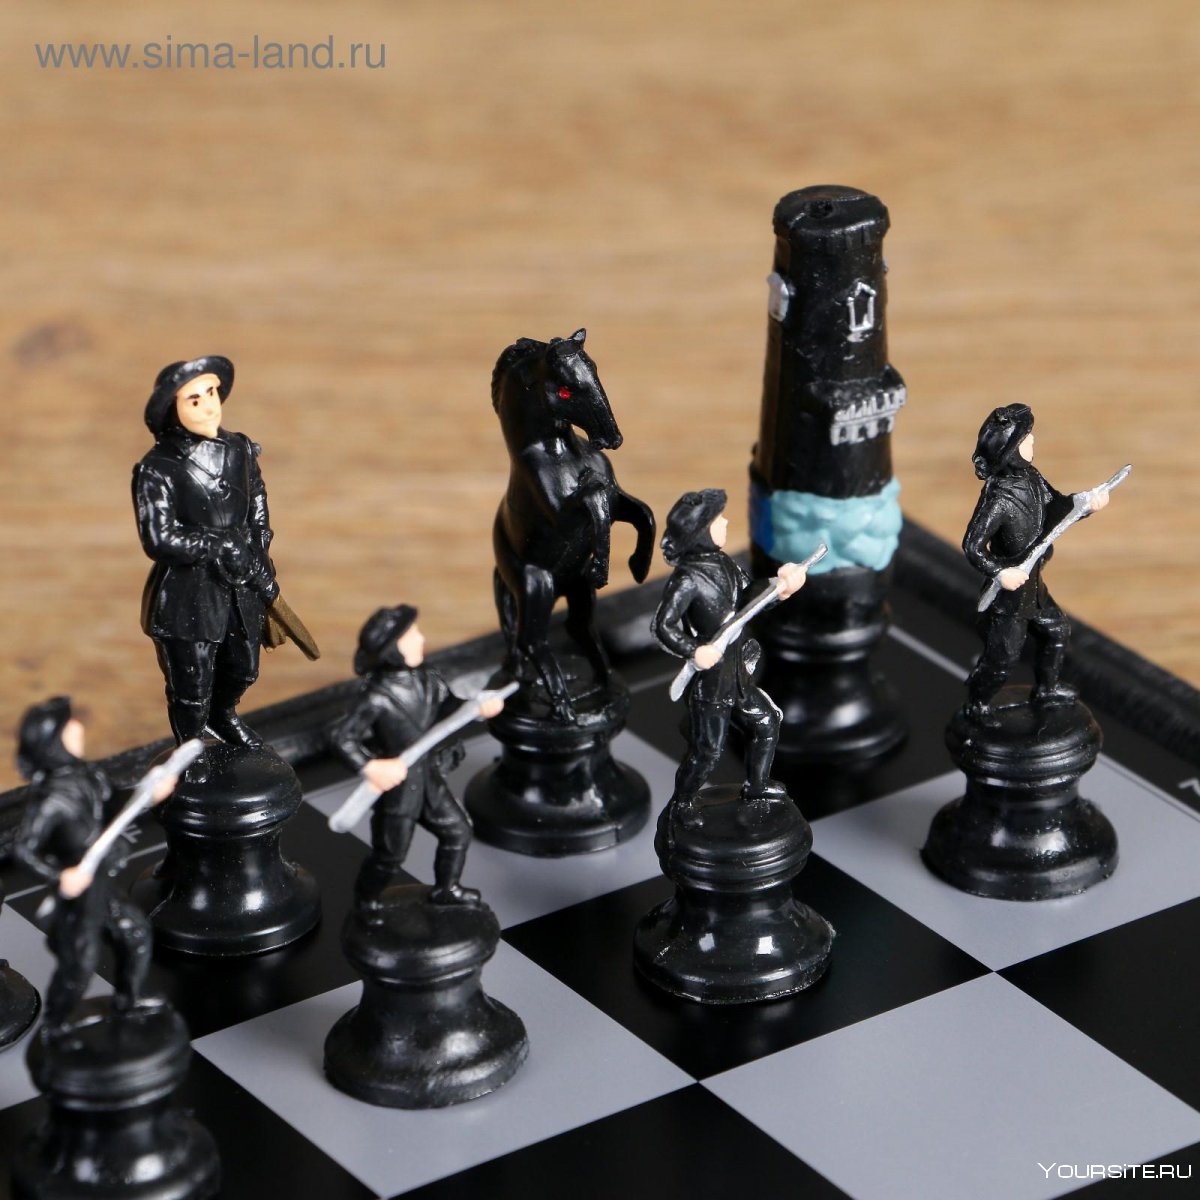 Необычные шахматные фигурки